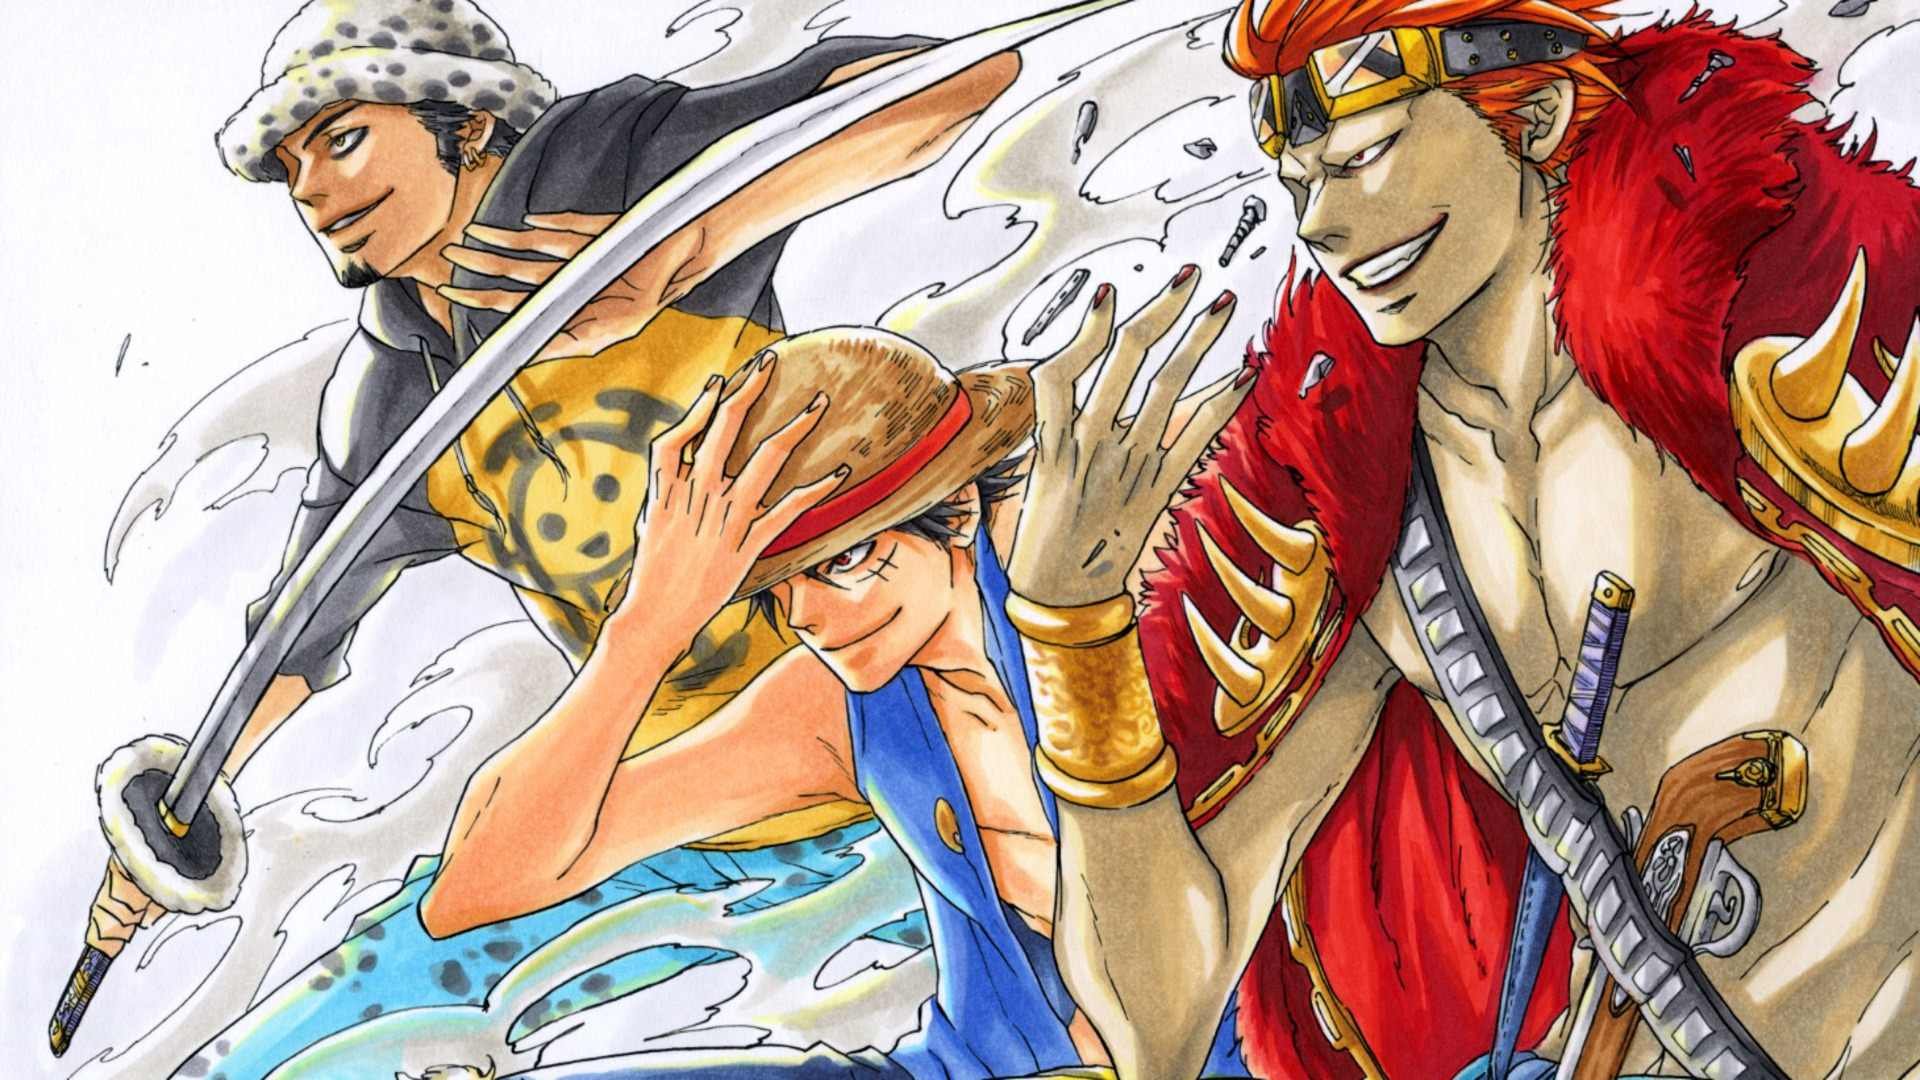 One Piece là một trong những bộ anime/manga nổi tiếng và đang được yêu thích nhất. Hãy xem hình ảnh liên quan để khám phá thế giới đầy phiêu lưu và kỳ diệu của Luffy và đồng đội trong One Piece!